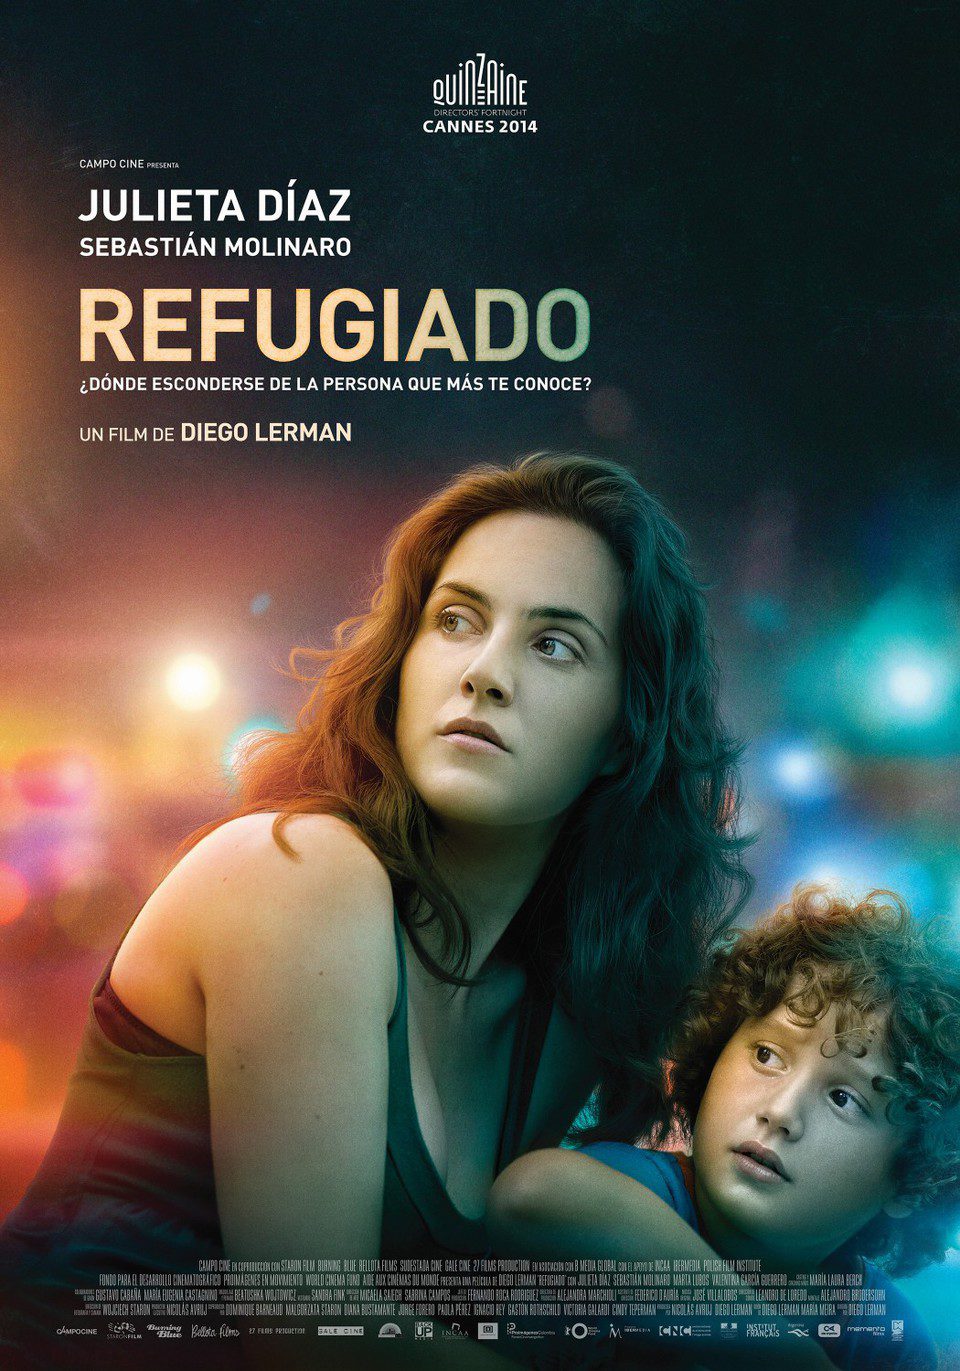 Poster of Refugiado - Argentina